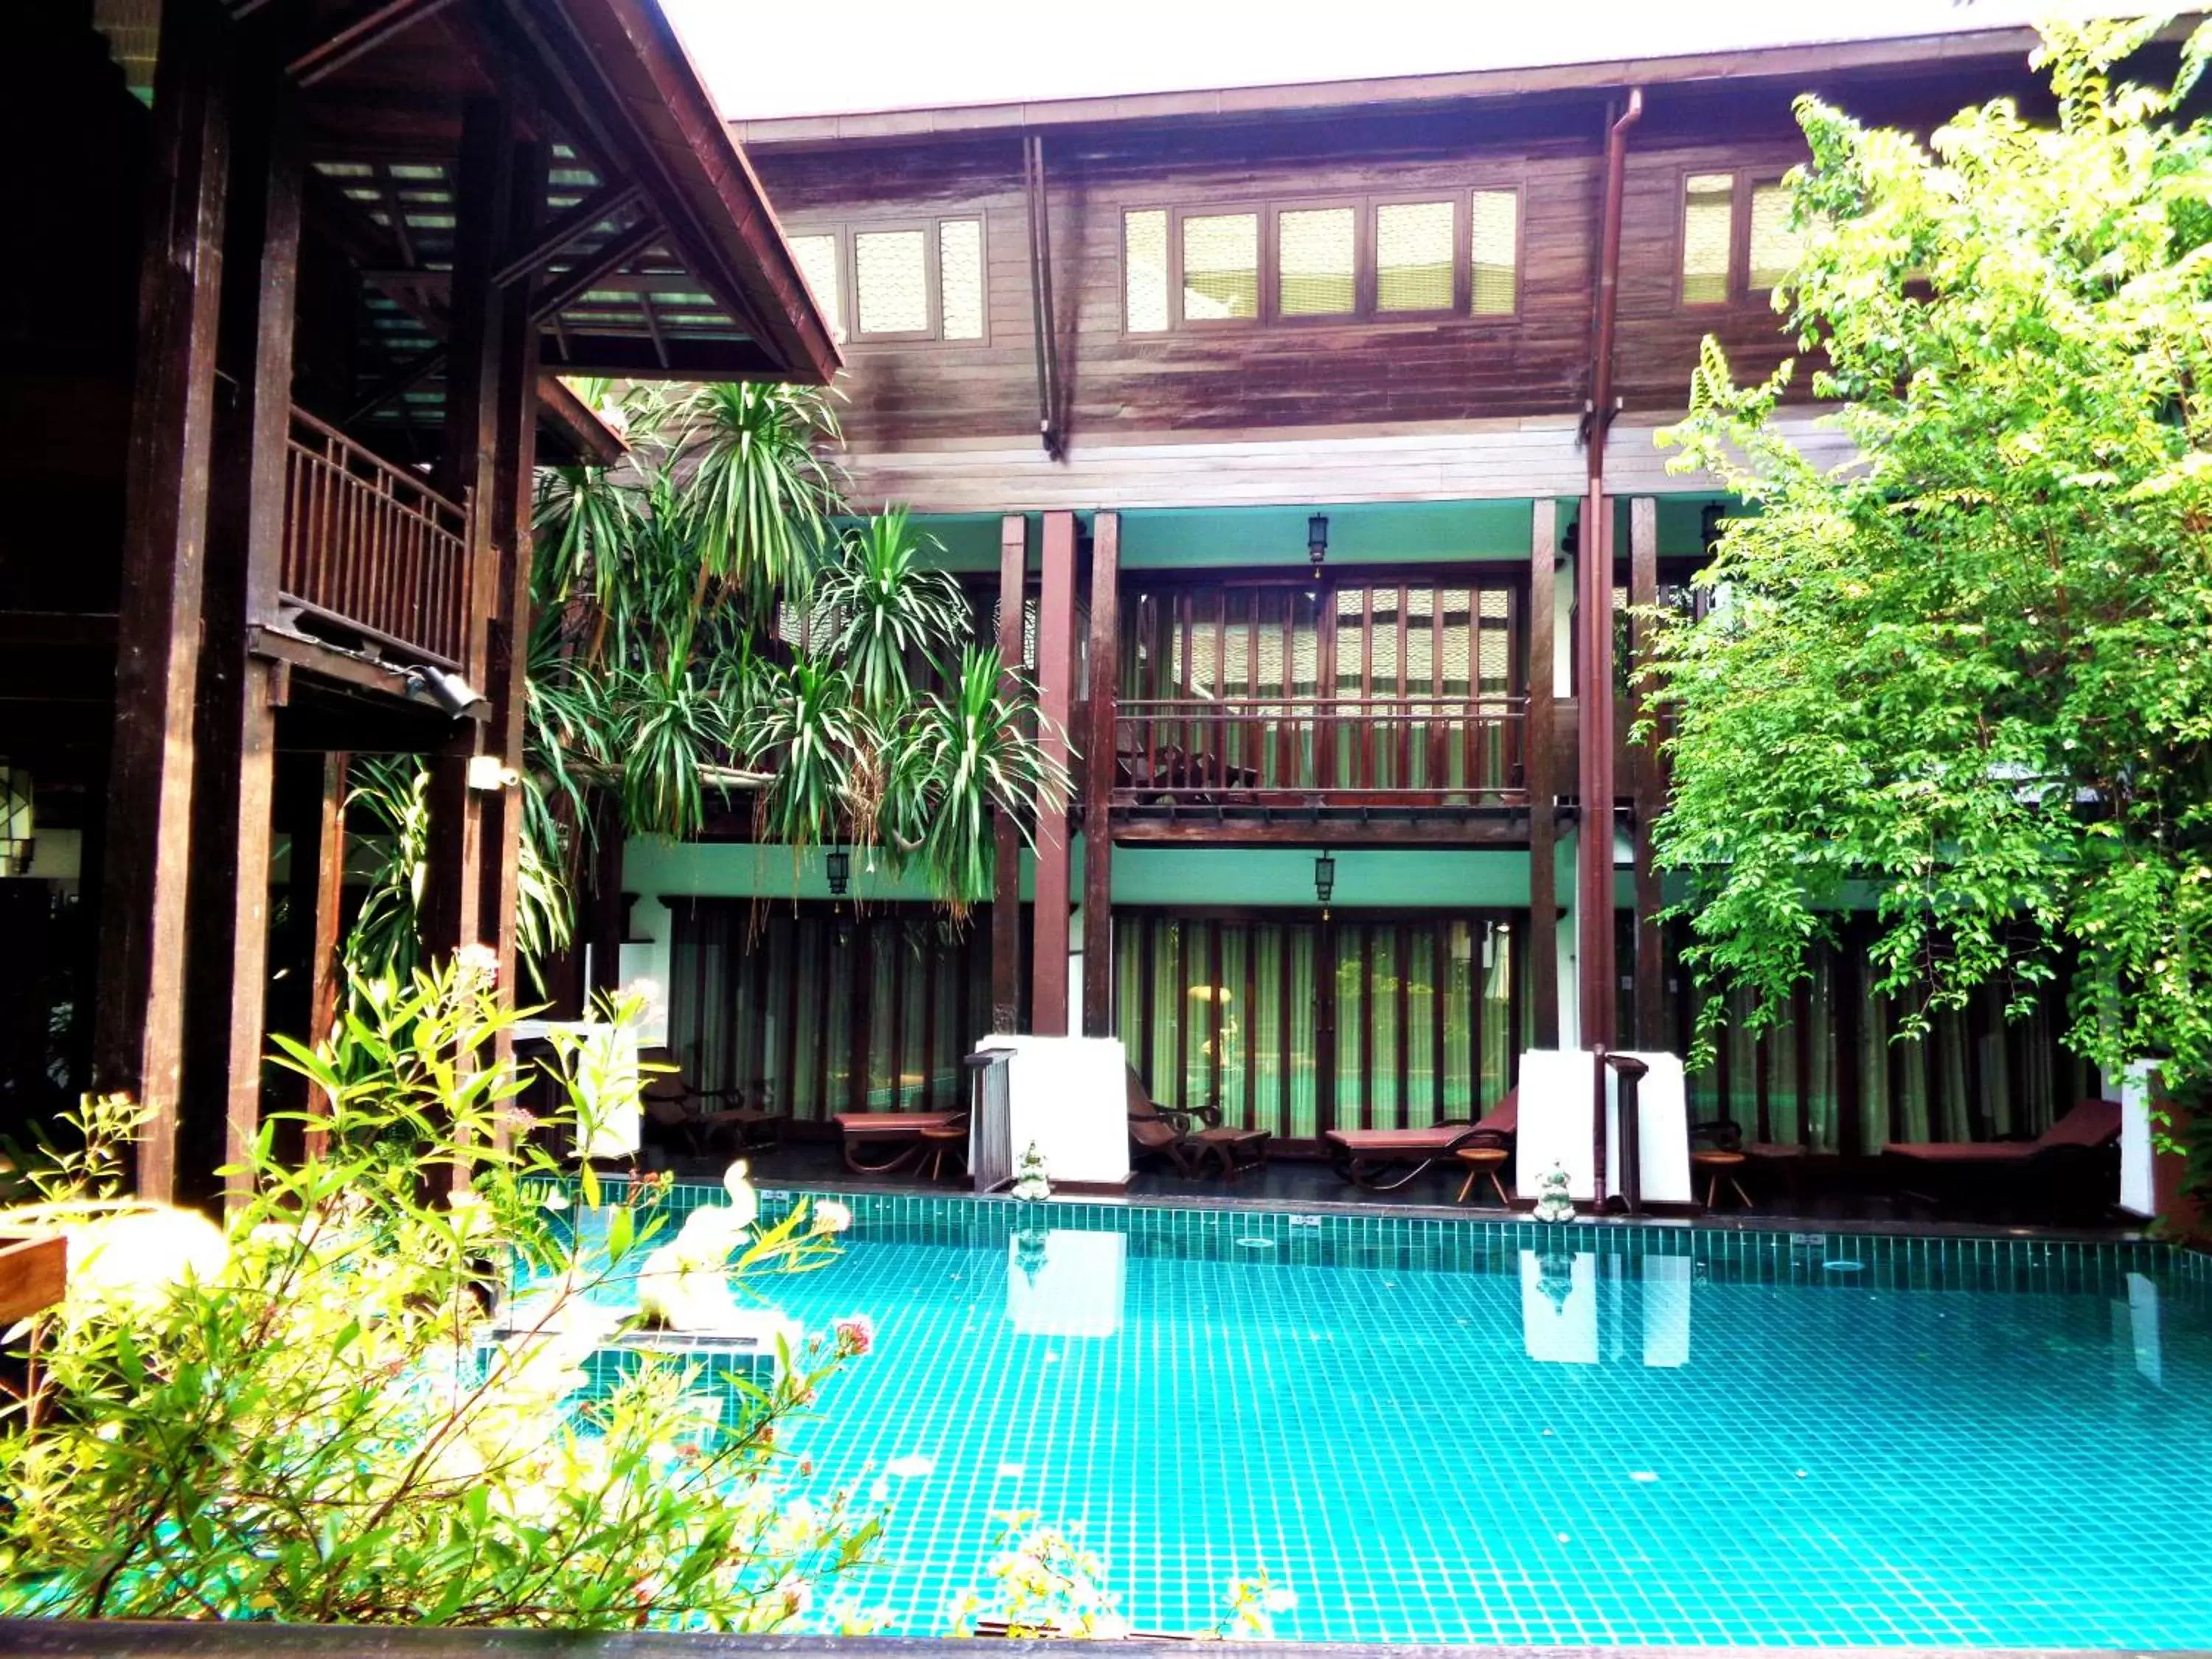 Swimming pool, Property Building in Yantarasri Resort